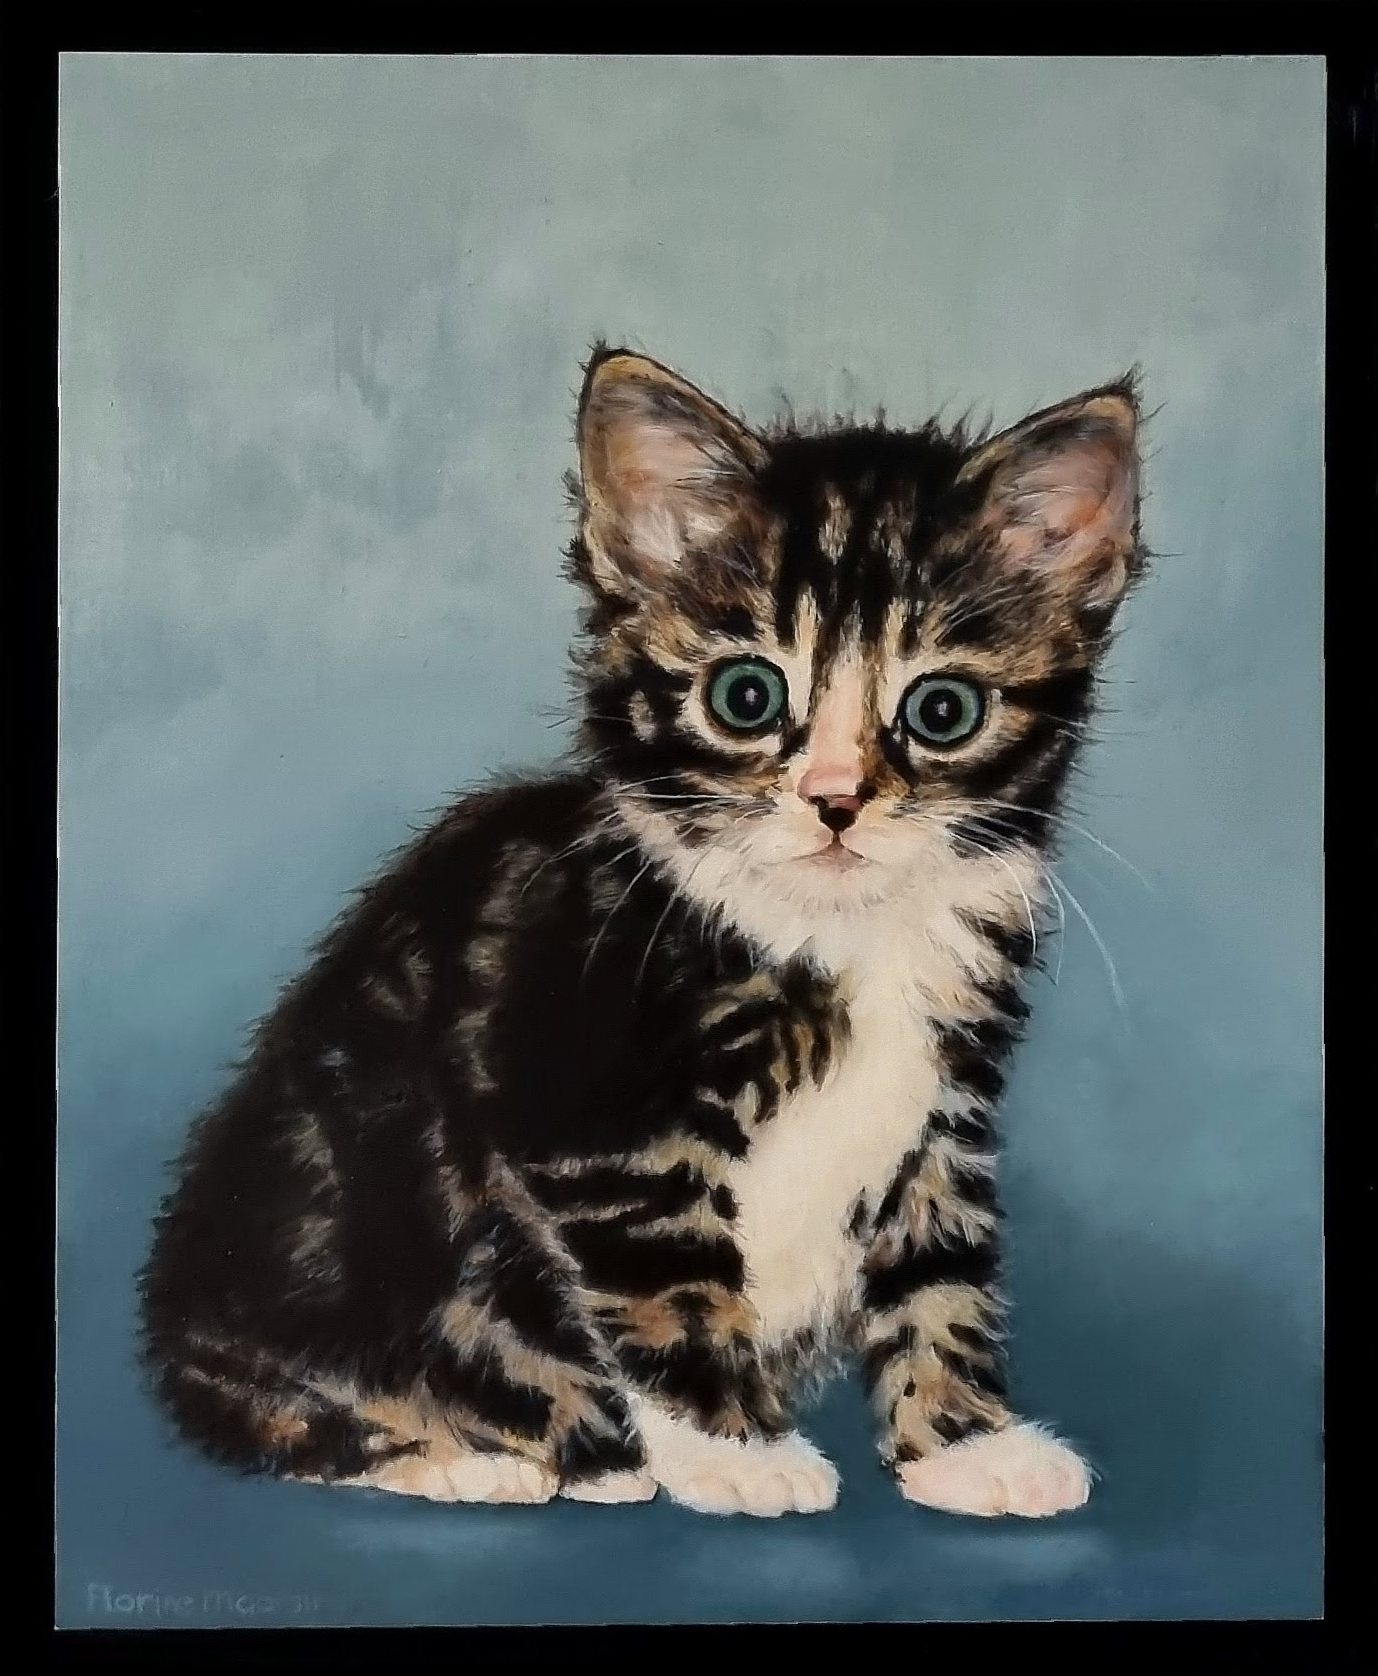 portrait of a kitten by art studio florine